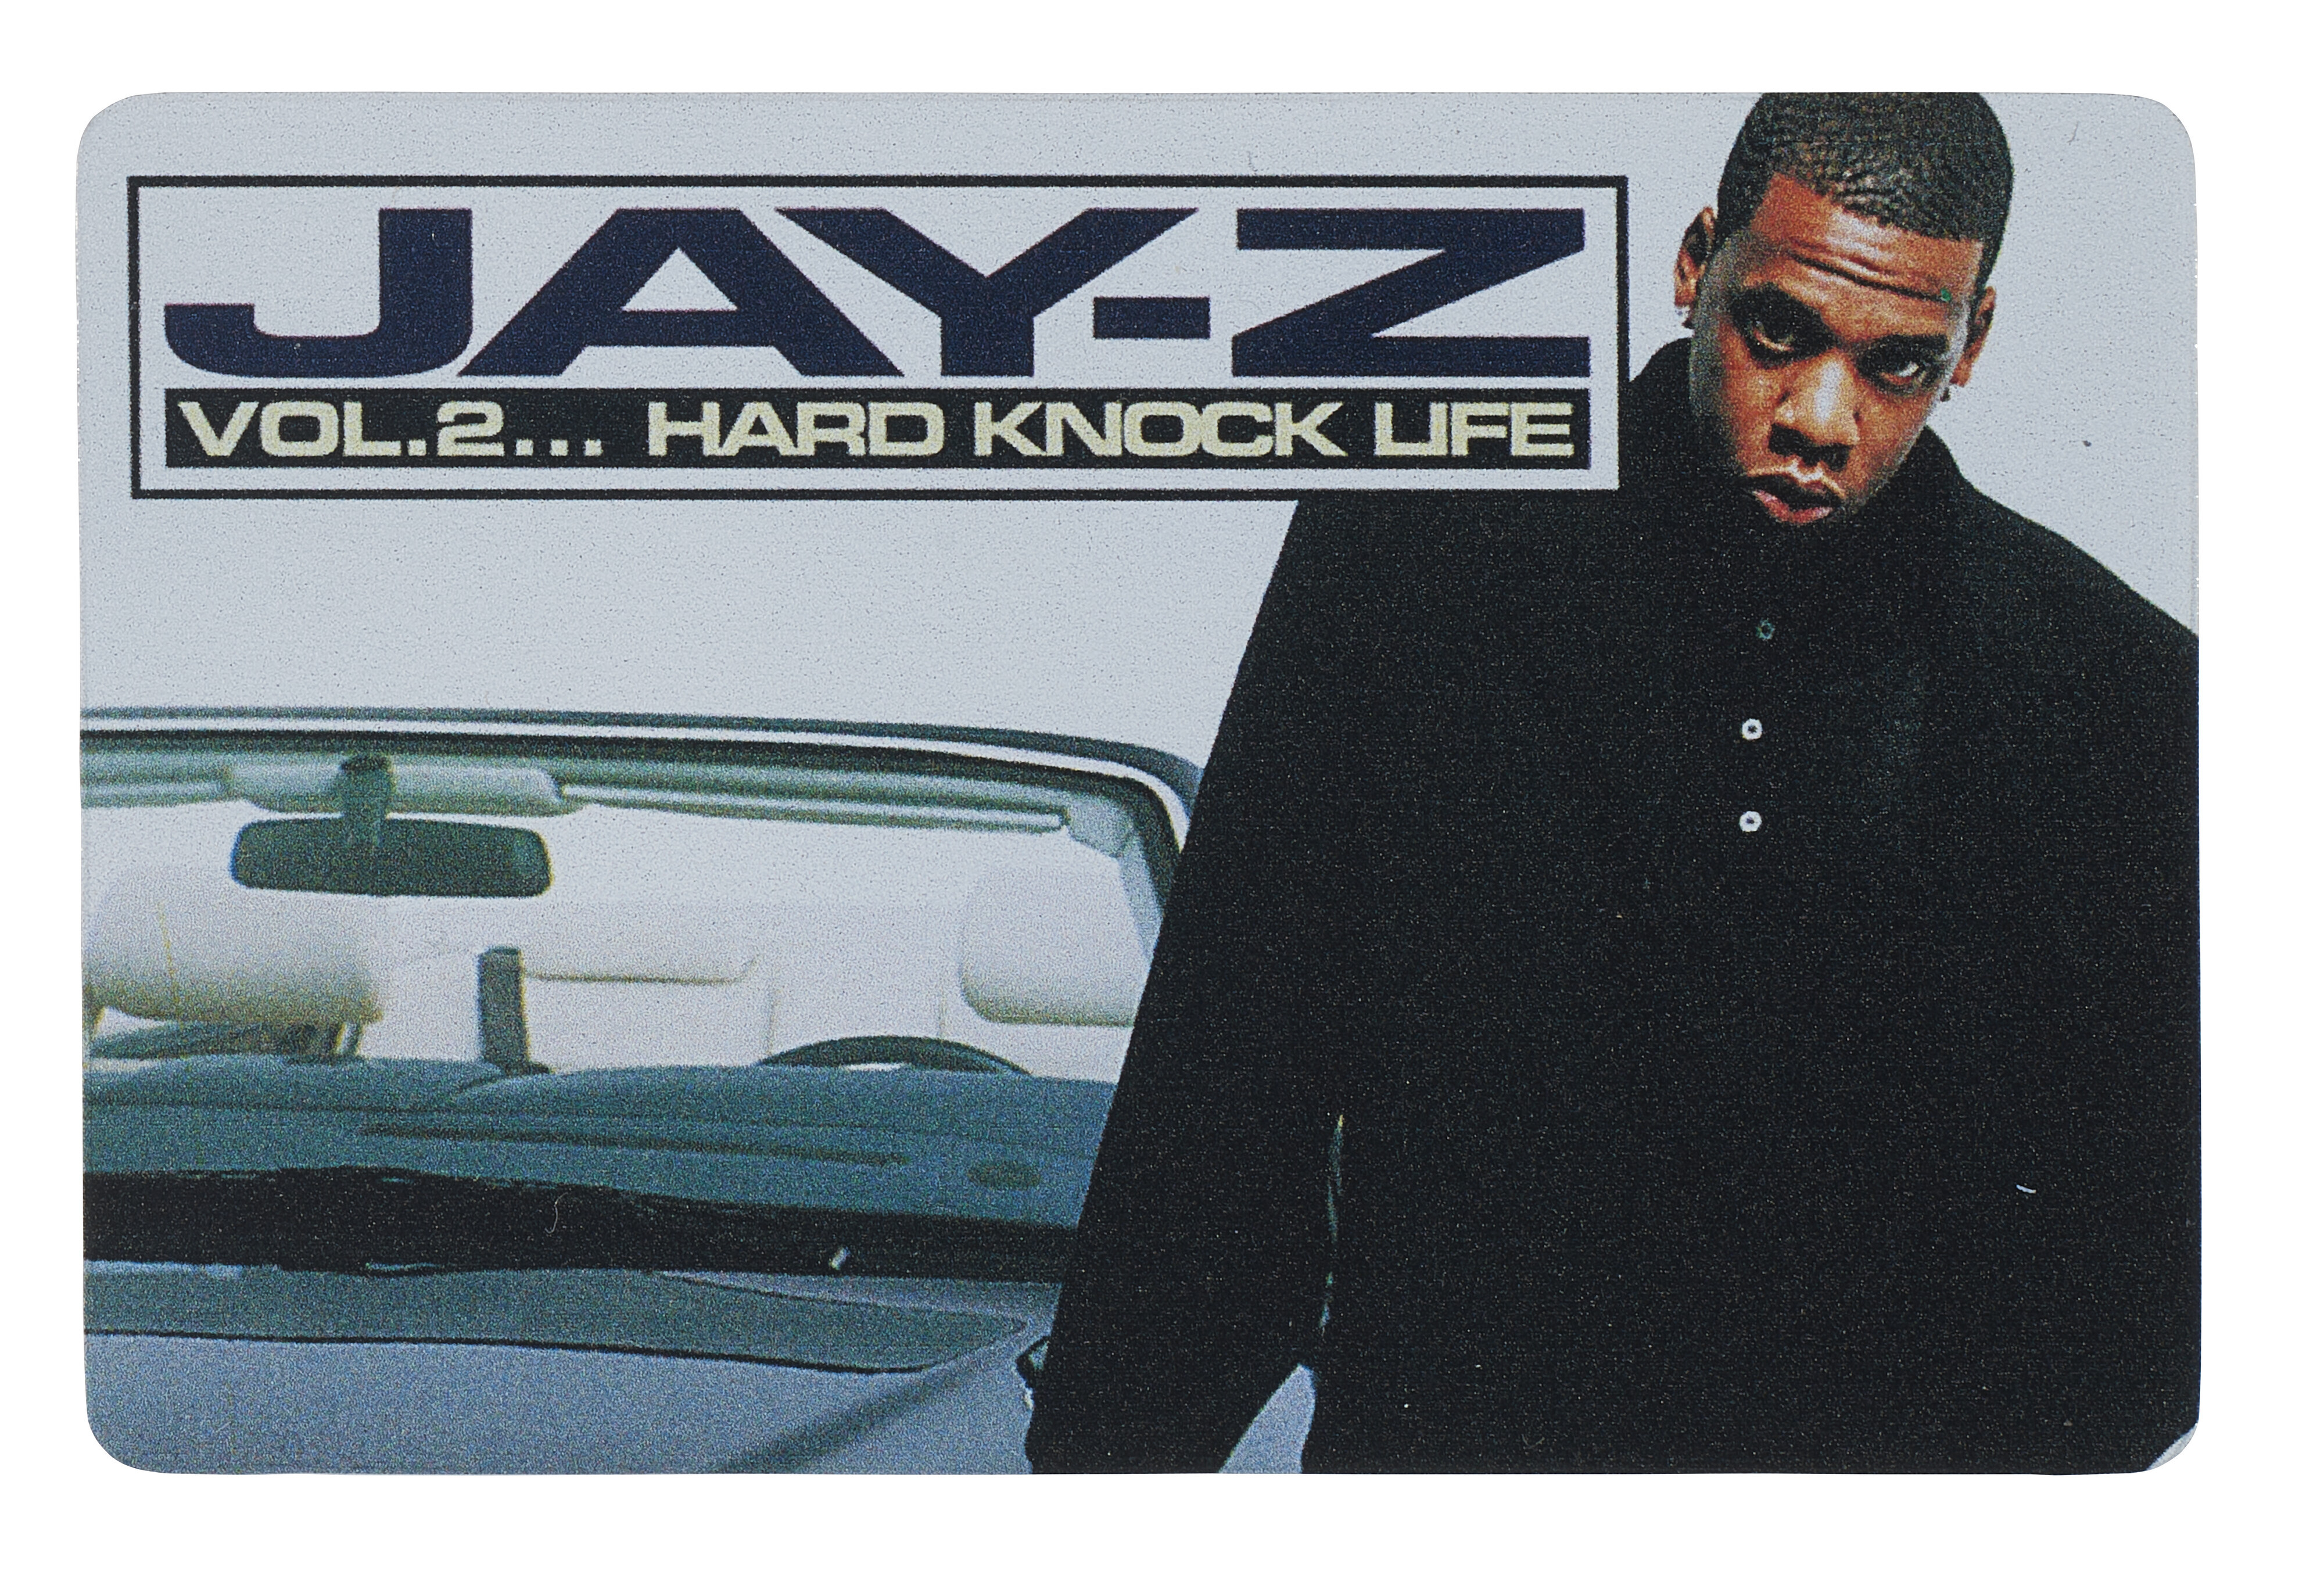 Hard knock life. Jay z Vol 3 Life. Jay-z "hard Knock Life". Vol. 2... hard Knock Life. Jay z обложка.